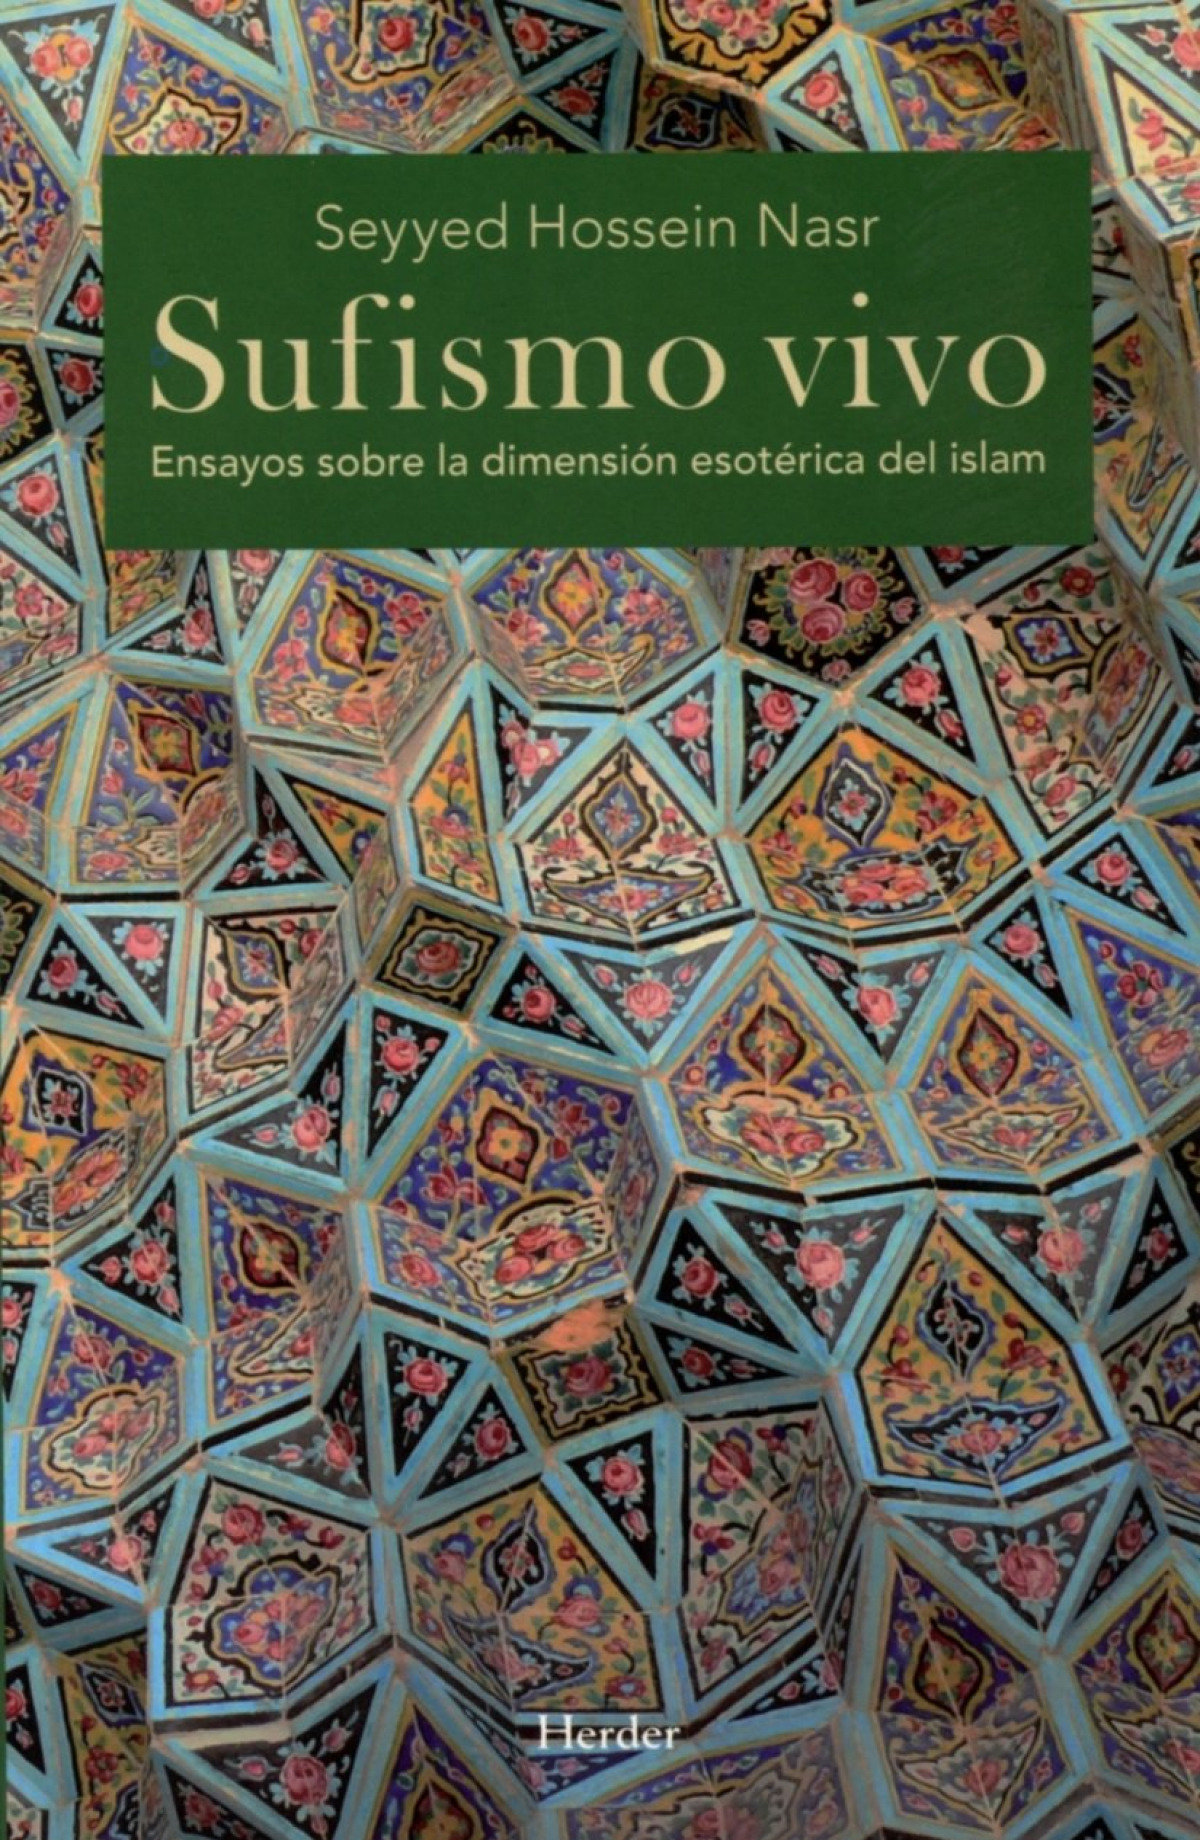 Sufismo vivo - Hossein Nasr, Seyyed